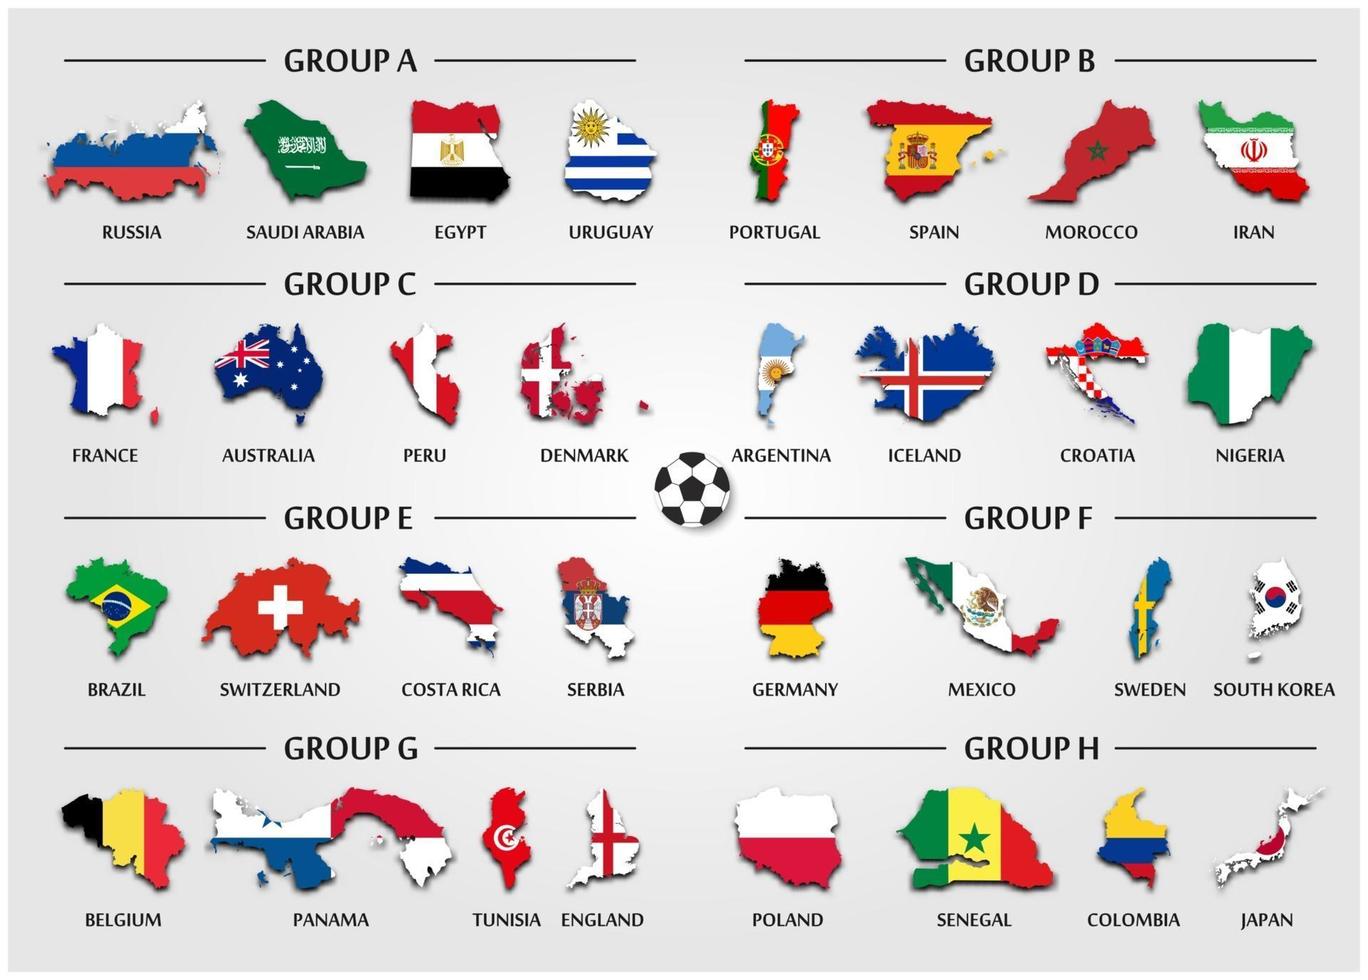 fotbolls- eller fotbollsgrupp gruppuppsättning landskarta med nationell flaggvektor för internationellt VM-turnering 2018 vektor